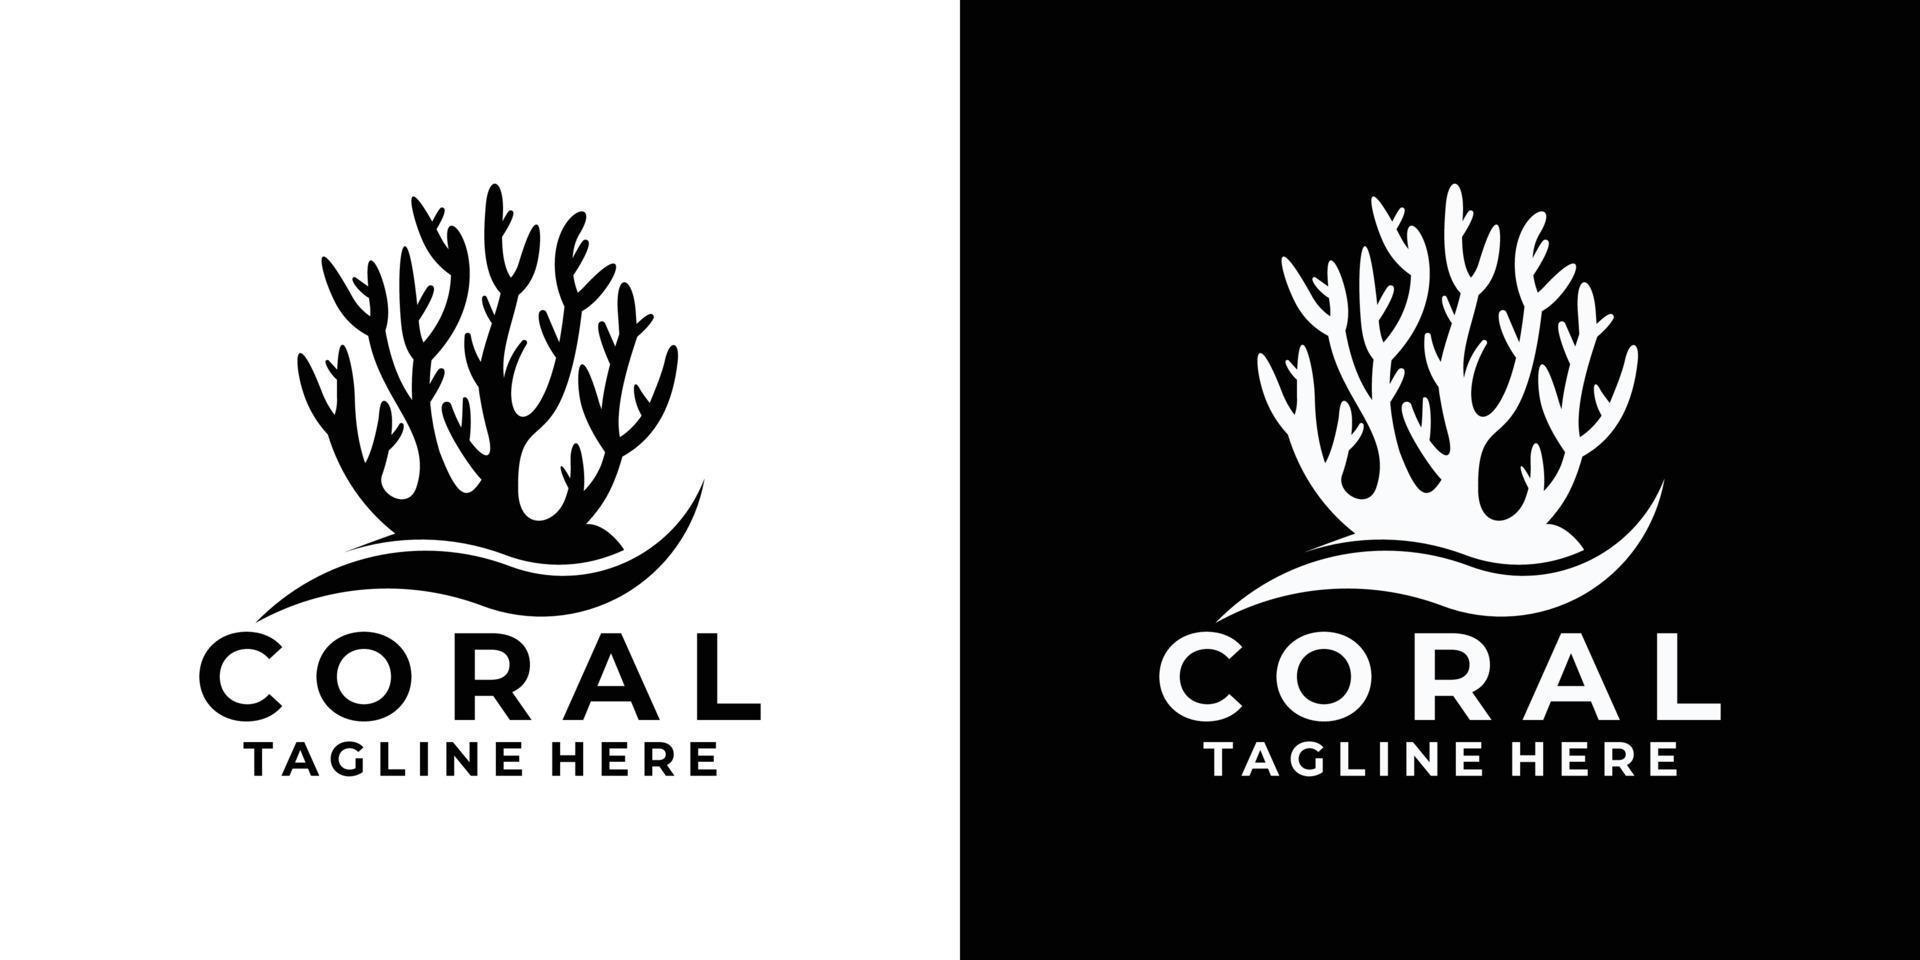 Premium Vector | Coral logo design